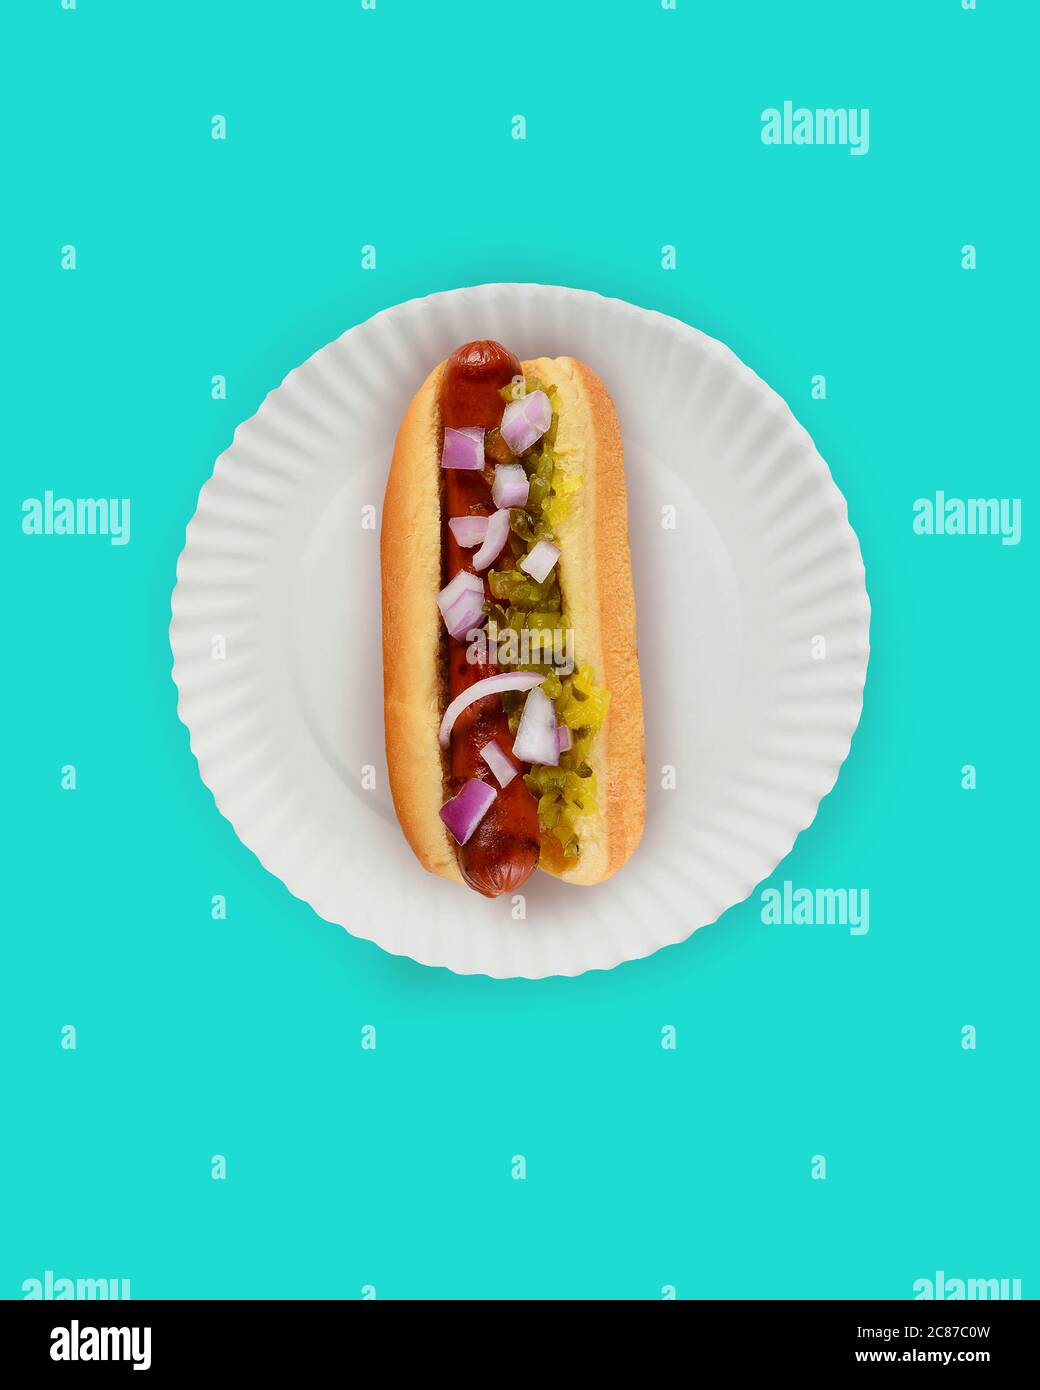 Piatto Lay Hot Dog in Bun Still Life. Falkfurter in panna con riadino e cipolle su un piatto di carta bianca su sfondo teale con spazio per la copia. Foto Stock